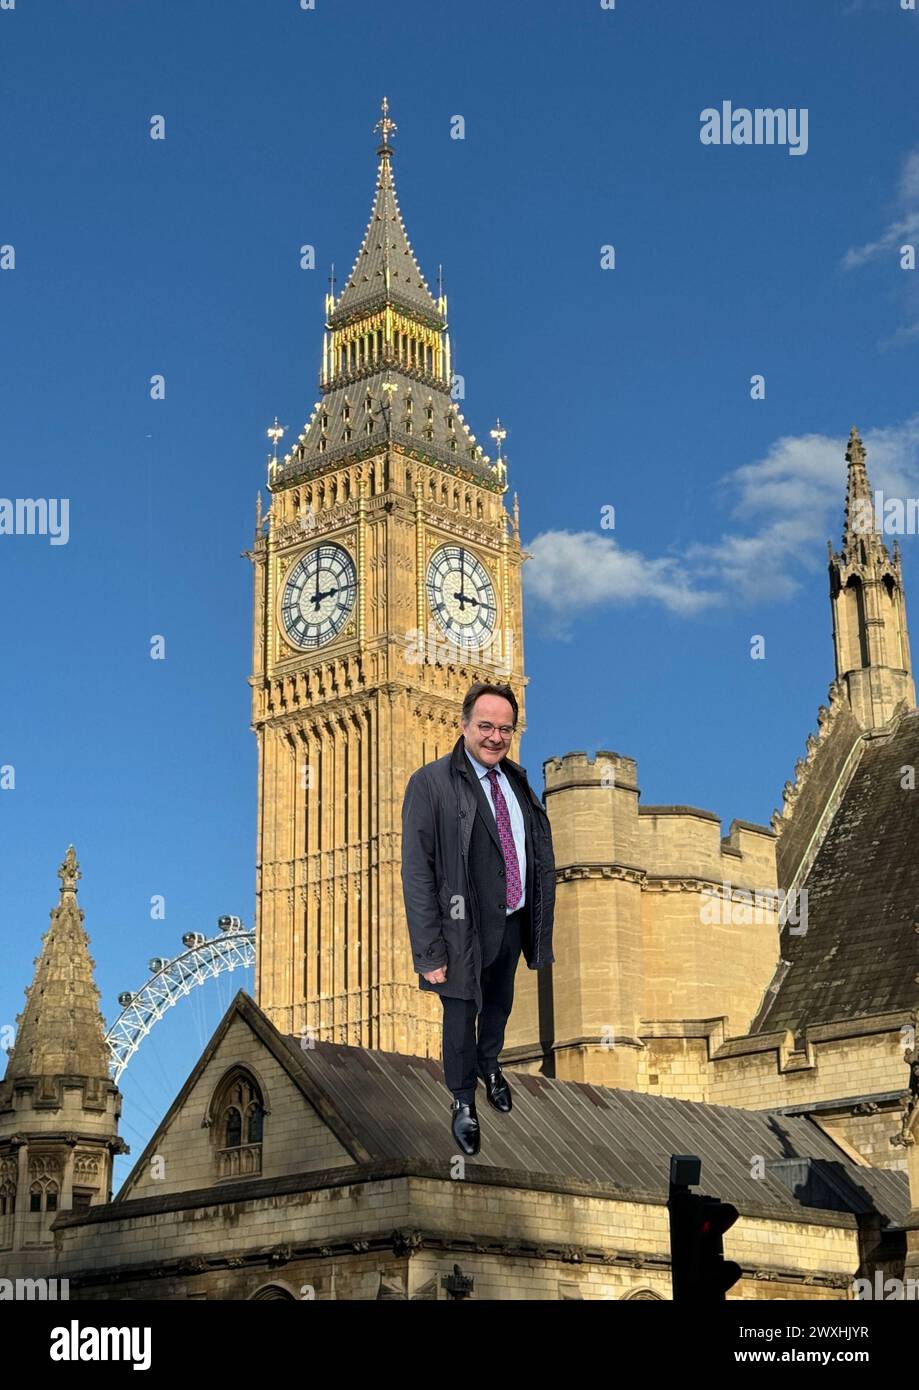 Der politische Skizzierautor Quentin Letts hat auf den Dächern einiger Gebäude auf dem Gelände des Palace of Westminster dargestellt, nur weil es anders ist und vielleicht repräsentativ dafür ist, dass er die Funktion der Regierung und die für die Aufgabe ernannten Charaktere übernimmt. Stockfoto